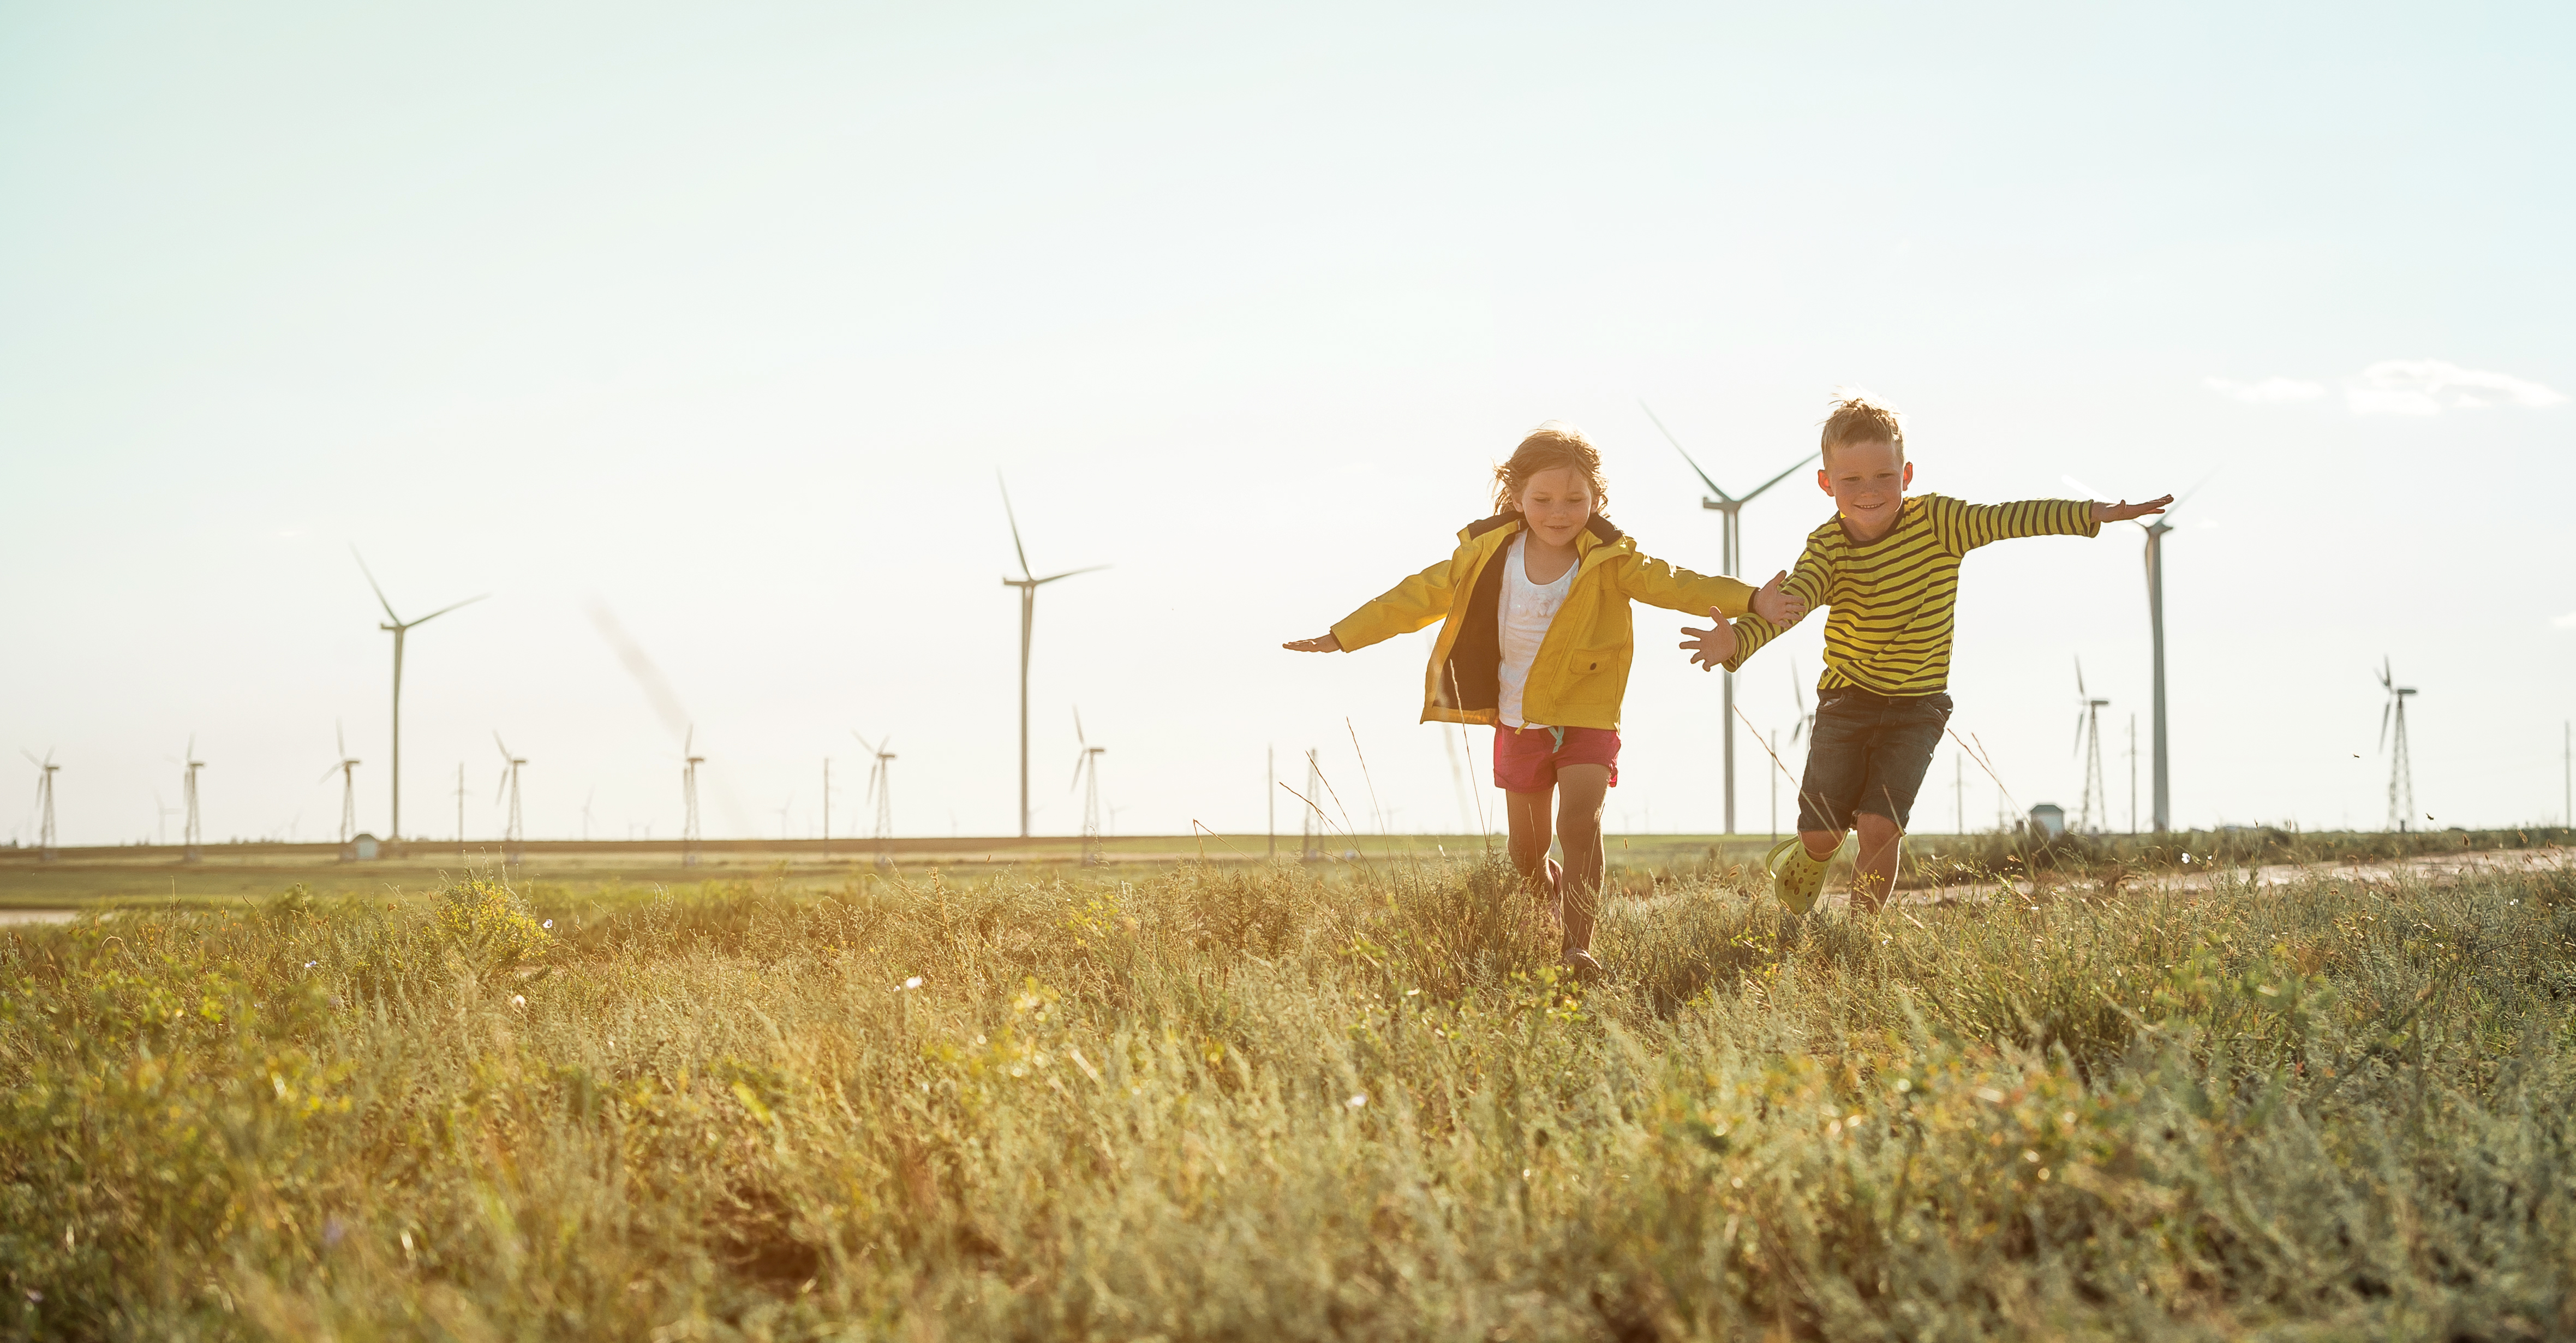 Two kids running in a field | Source: Shutterstock